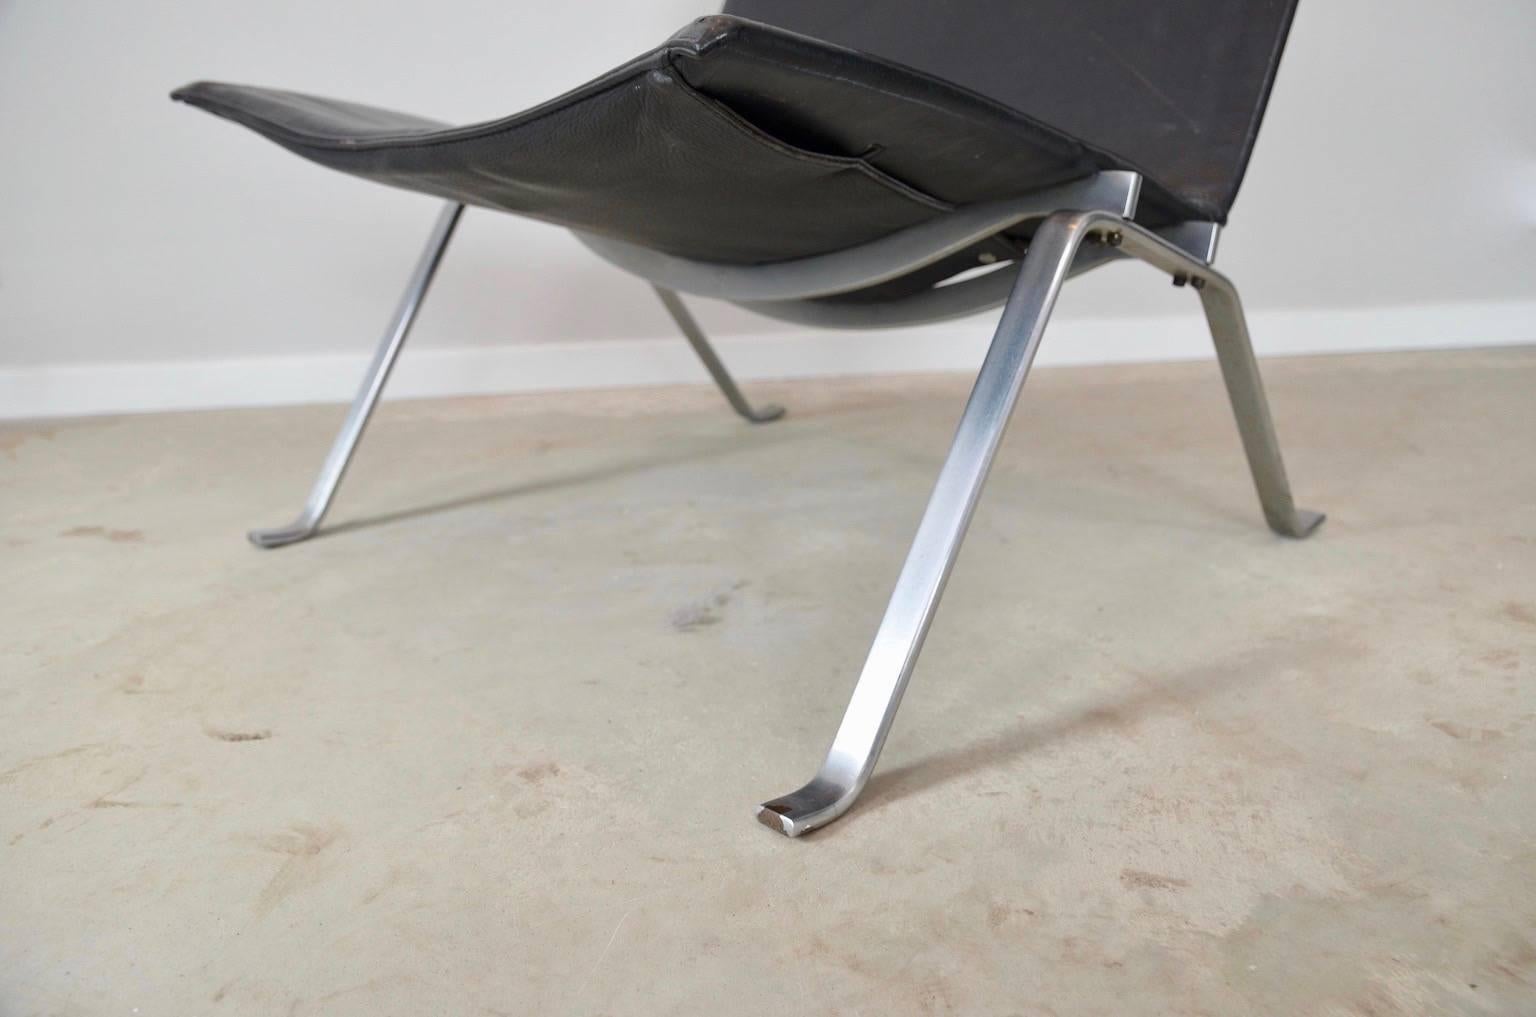 Mid-Century Modern Poul Kjaerholm Black Leather Lounge Chair PK 22 for E. Kold Cristensen, Denmark